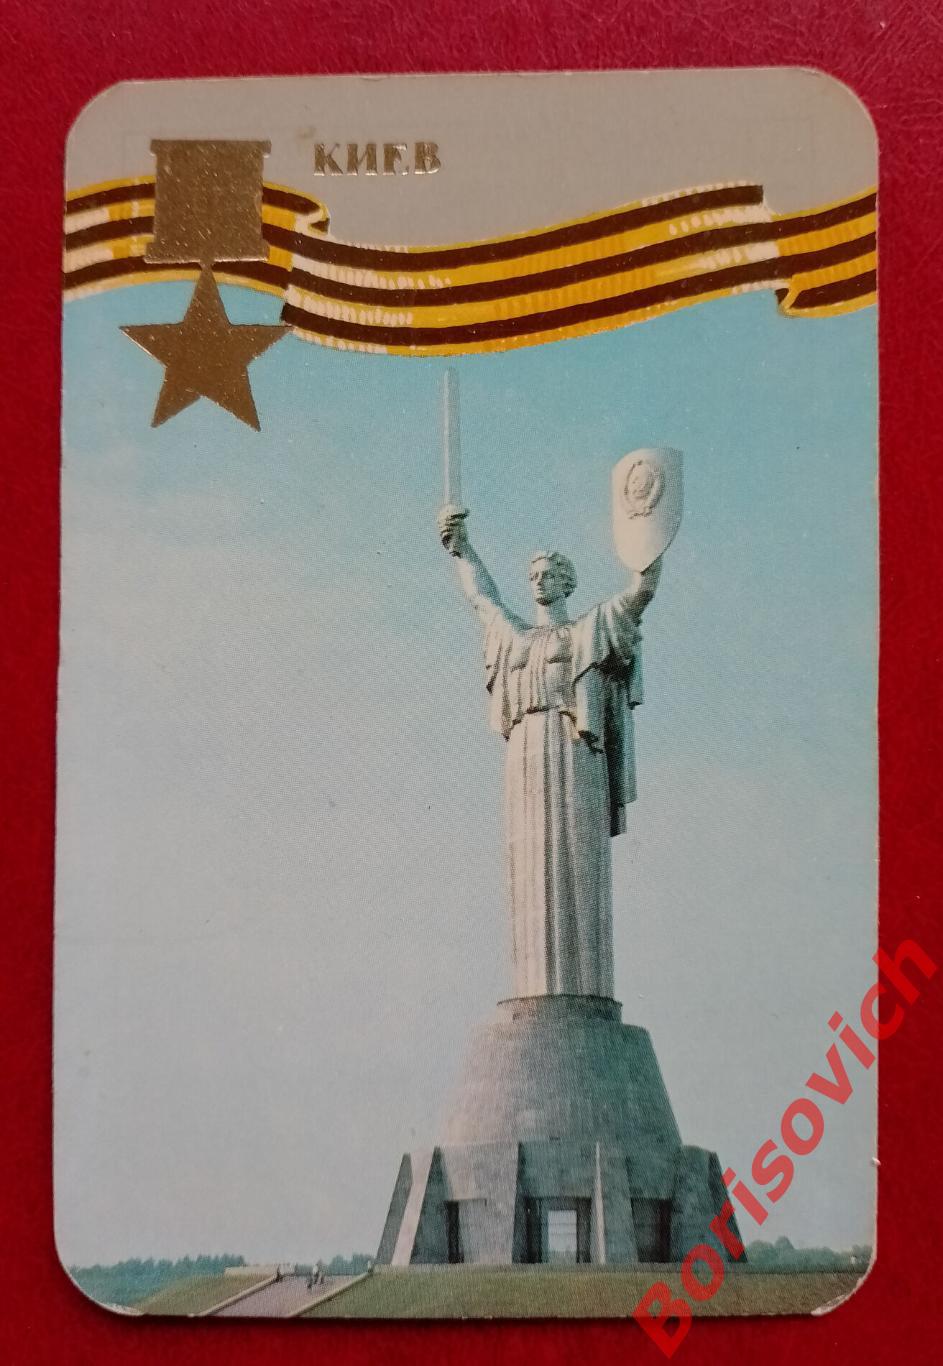 Календарик Киев - город - Герой 1985 г 40 лет Победы Русского народа в ВОВ